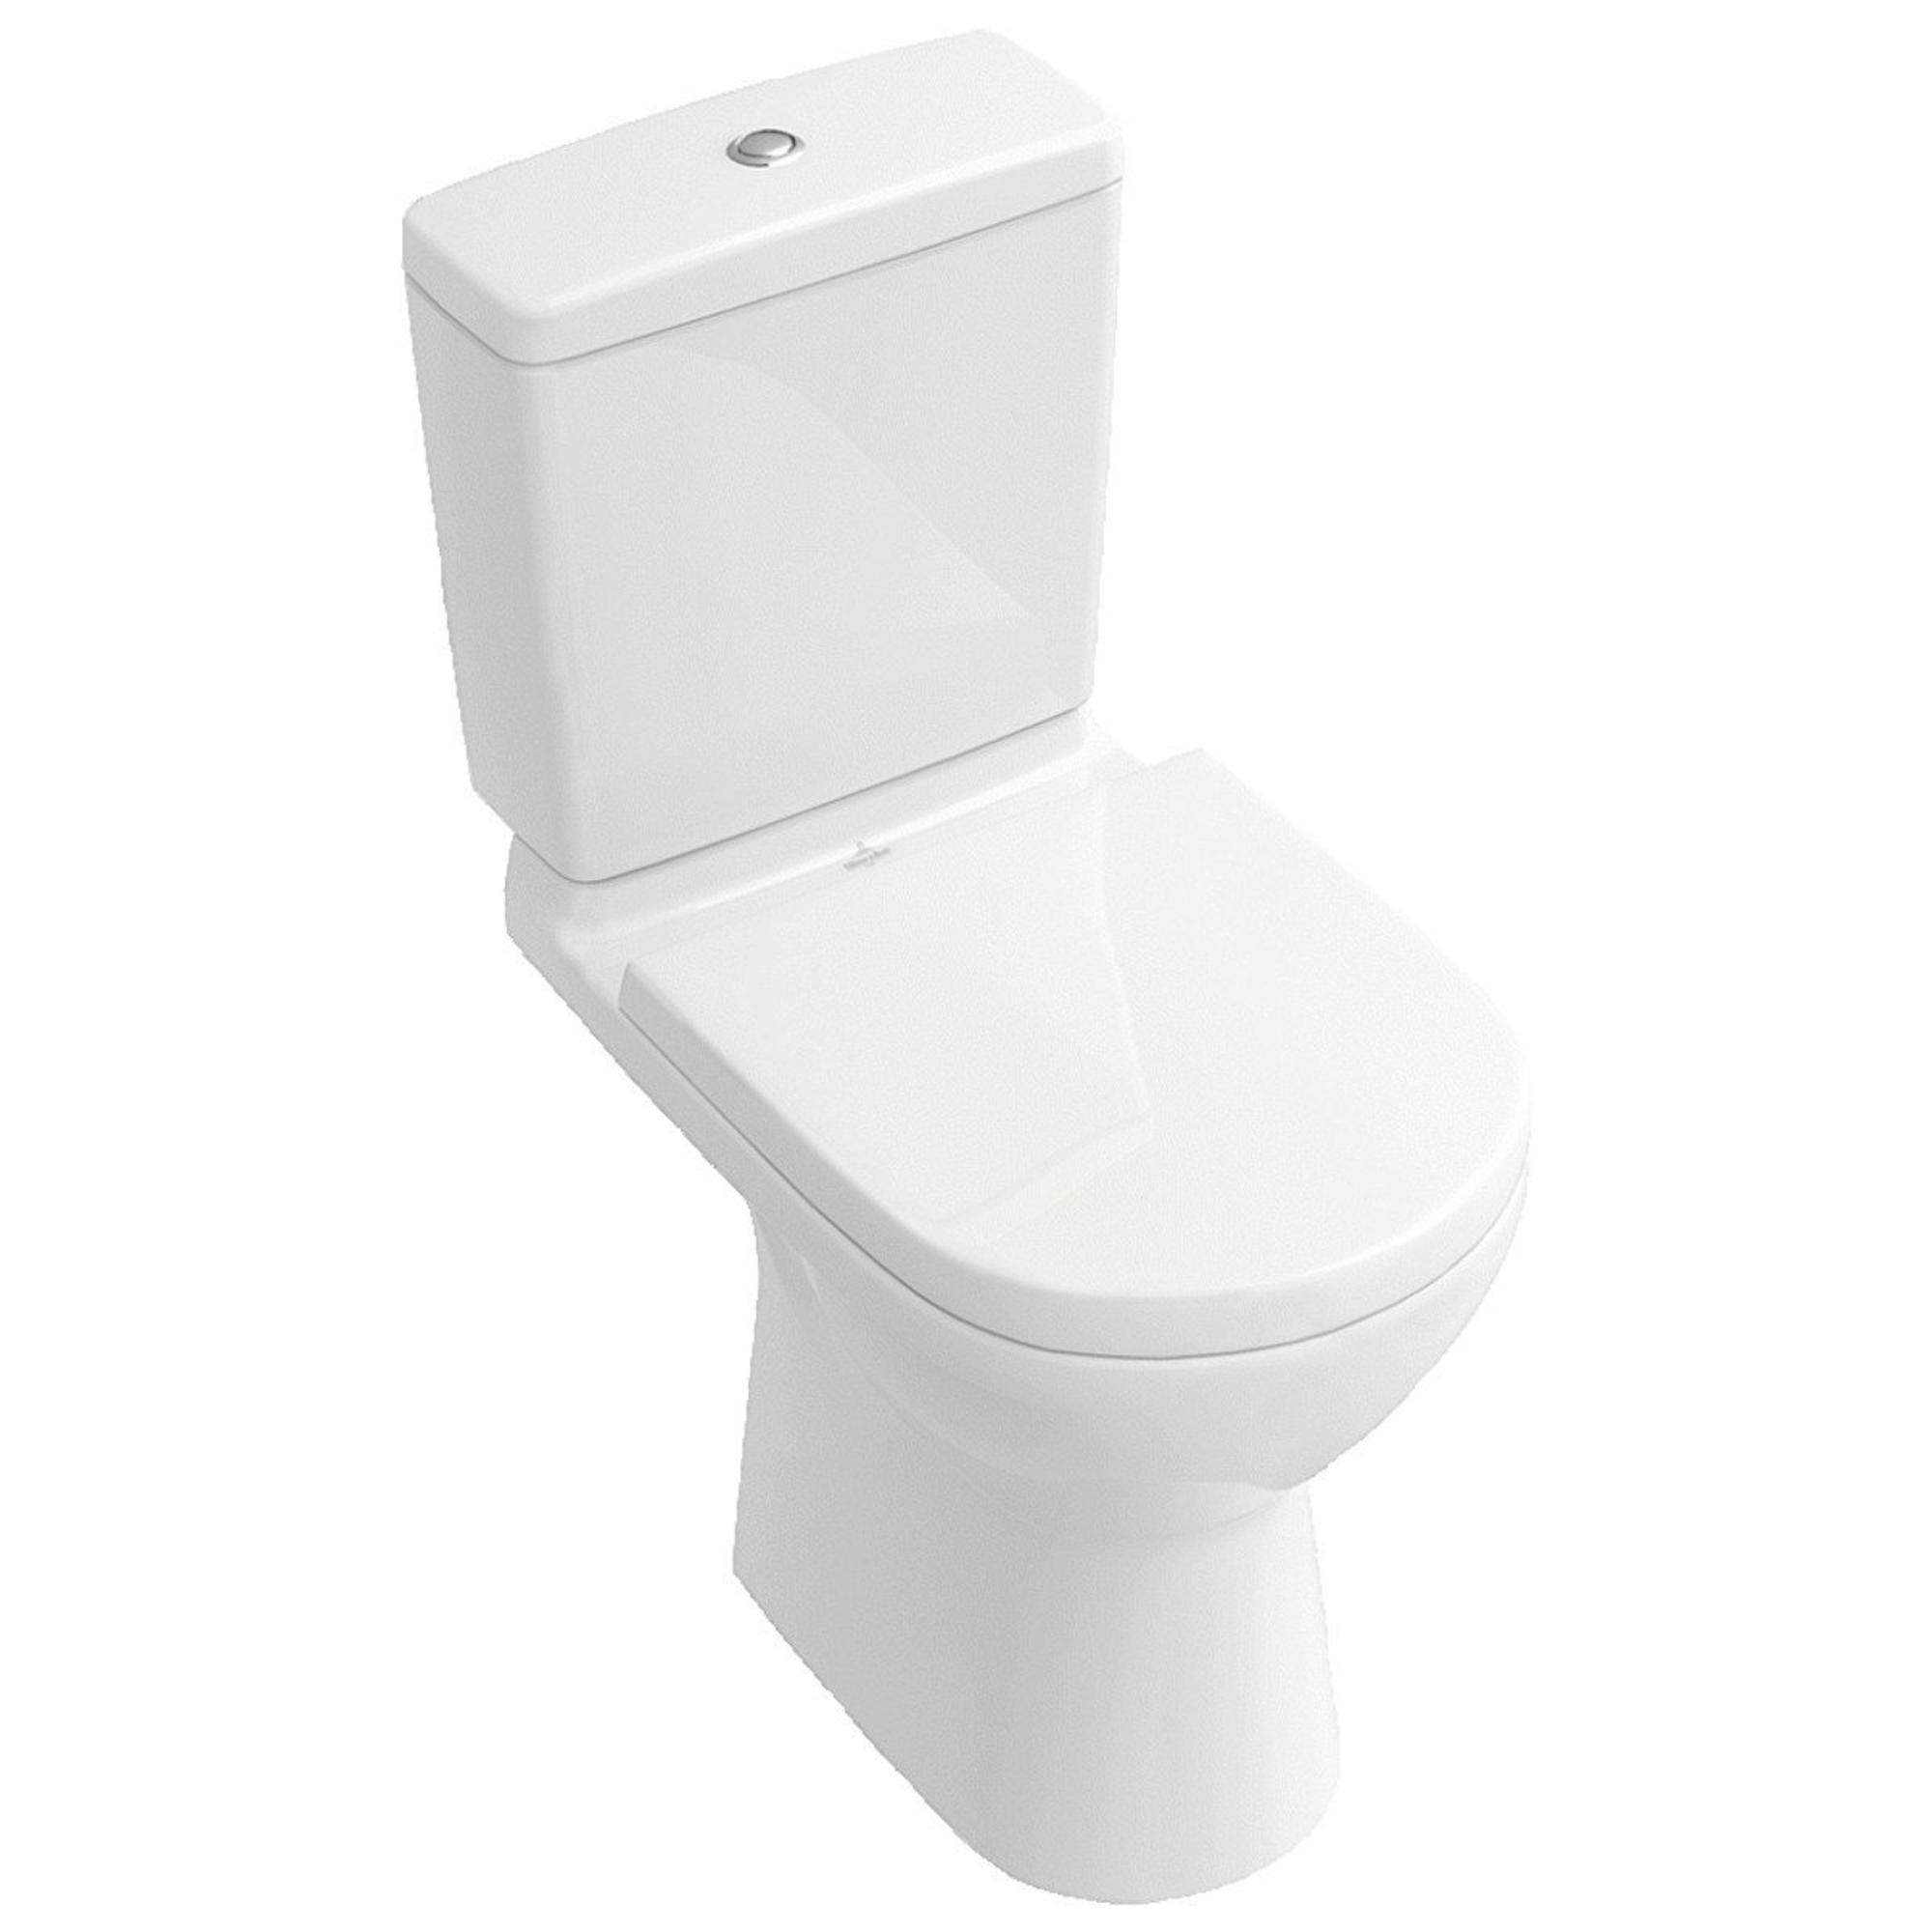 Objets BIM et CAO - Toilette - 71712 PRESTO Combi Lavabo WC - Montage  Arrière LVL0 - Presto